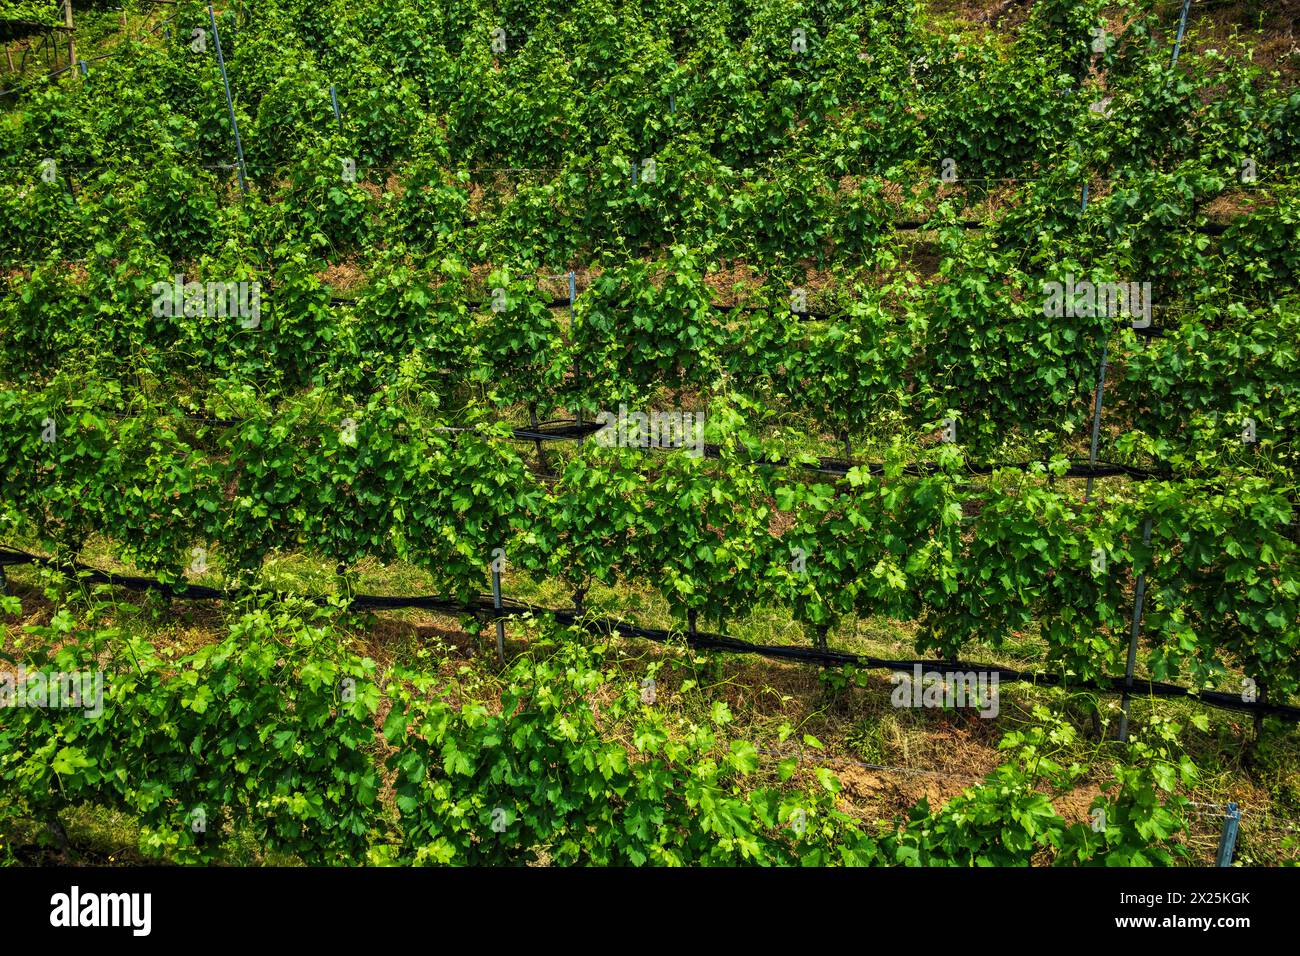 Meraner Weinberg, Burggrafenamt, Südtirol, Italien Blick von oben auf die Weinstöcke eine Weinbergs a Merano, Burggrafenamt, Südtirol, Italien. Vista f Foto Stock